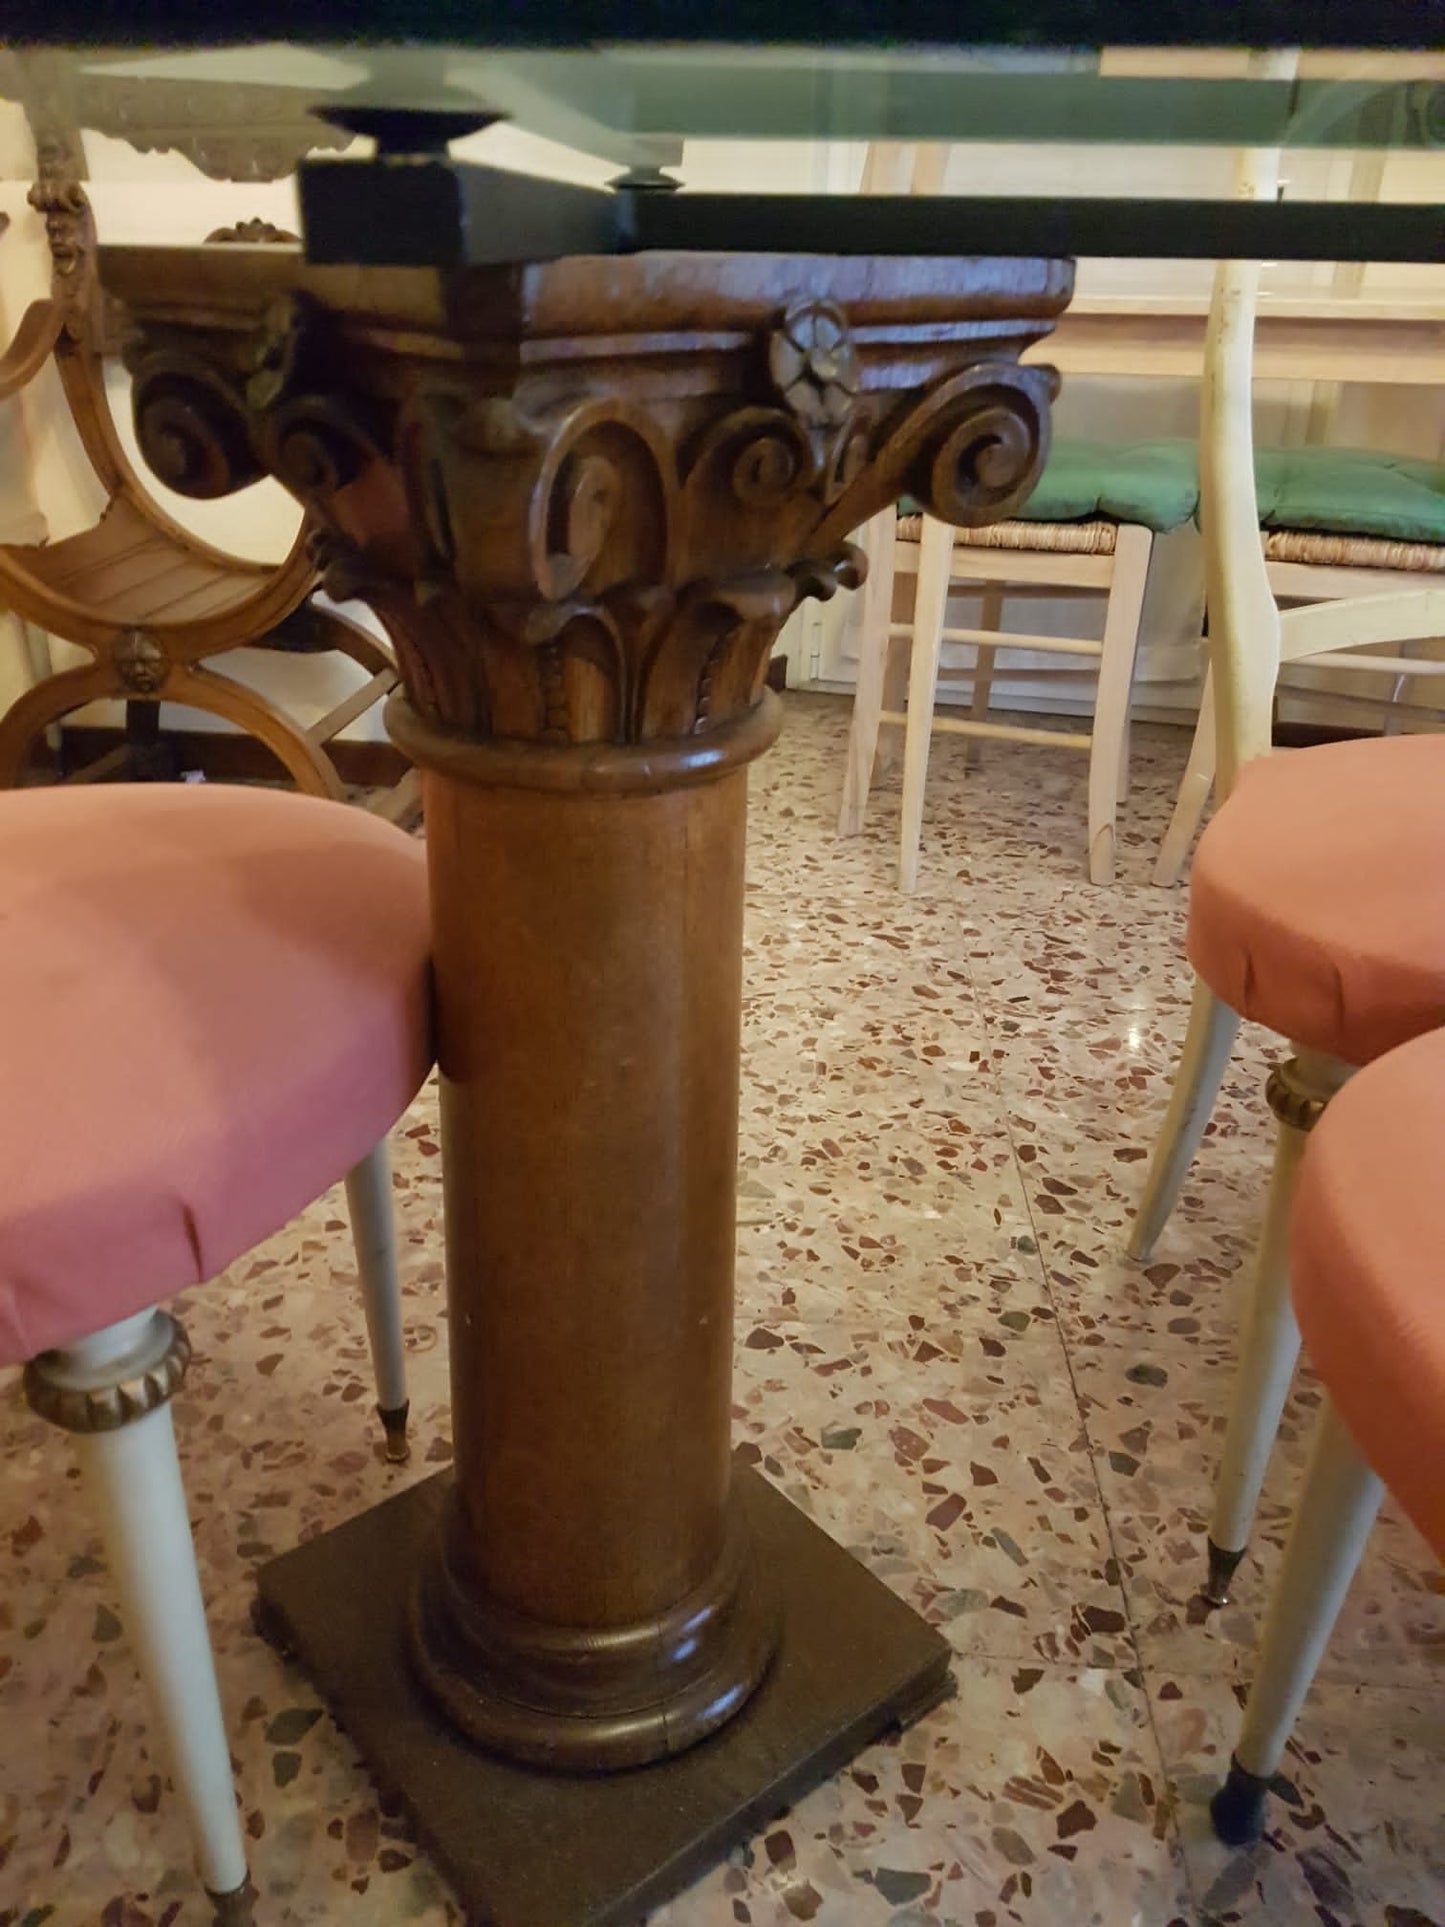 Table en cristal avec colonnes en bois anciennes